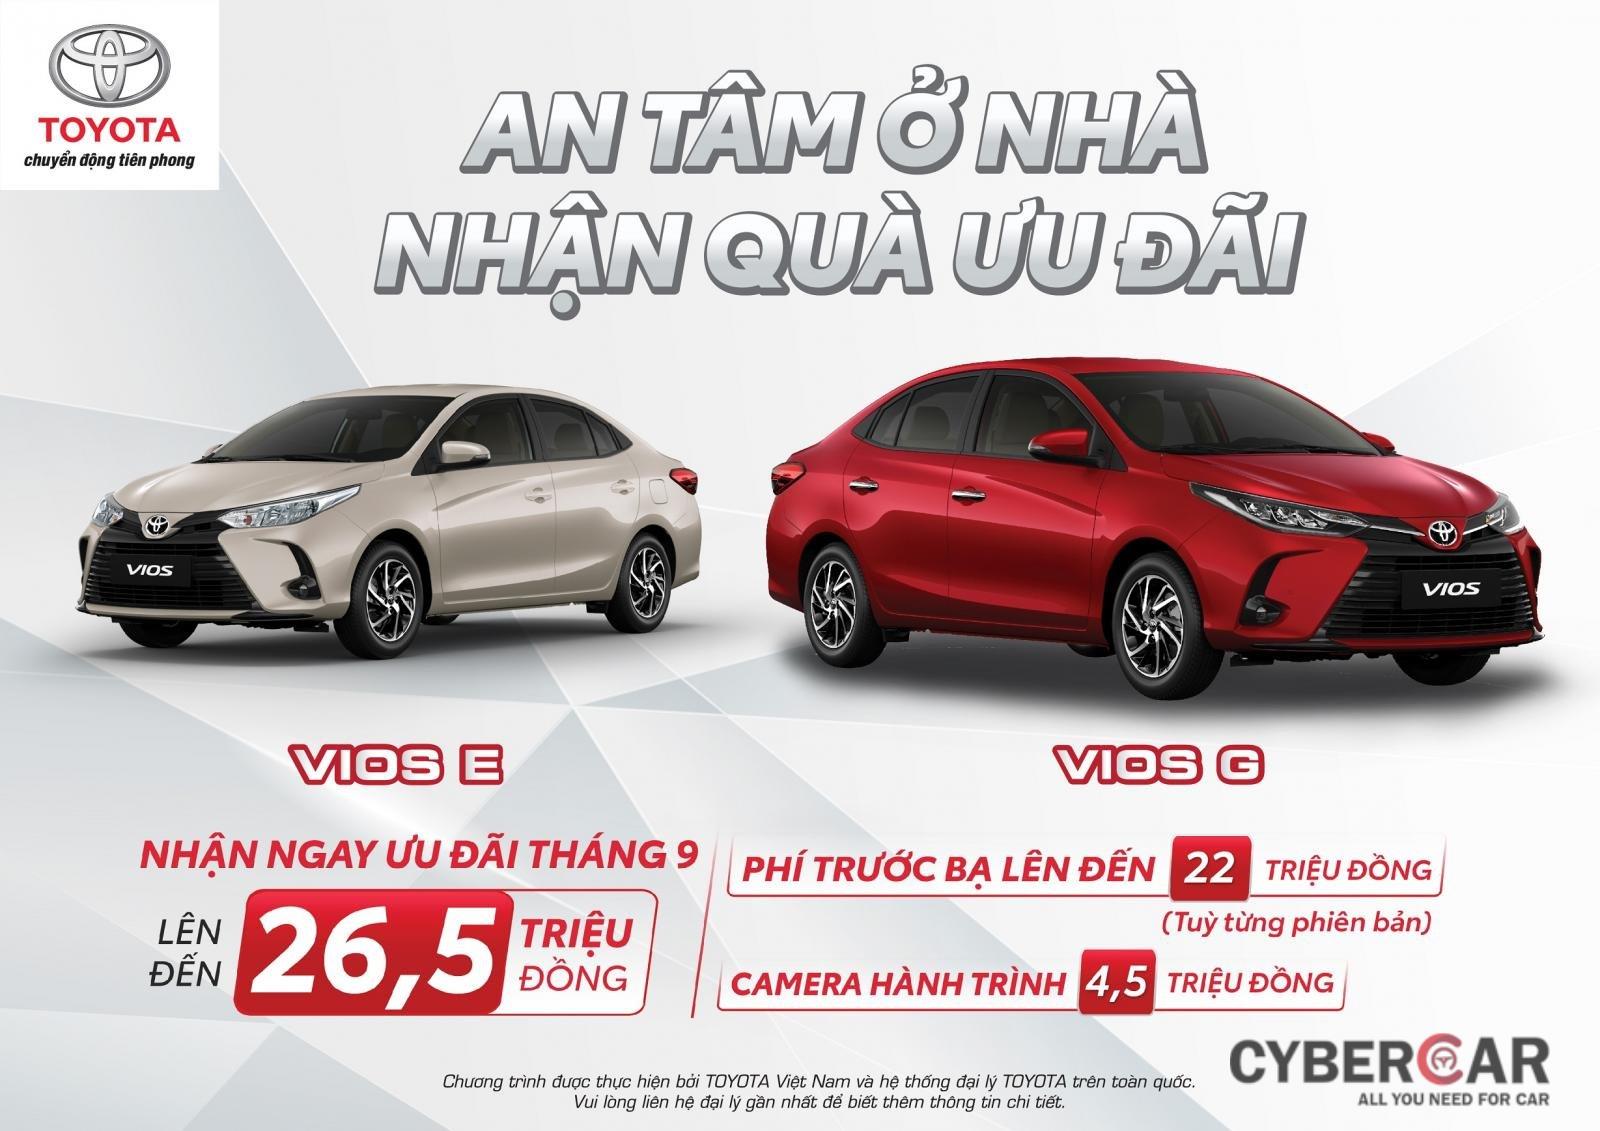 mua xe Toyota Vios trong thời gian này, khách hãng còn nhận được sự hỗ trợ từ Công ty Tài Chính Toyota Việt Nam với gói vay ưu đãi lãi suất  1